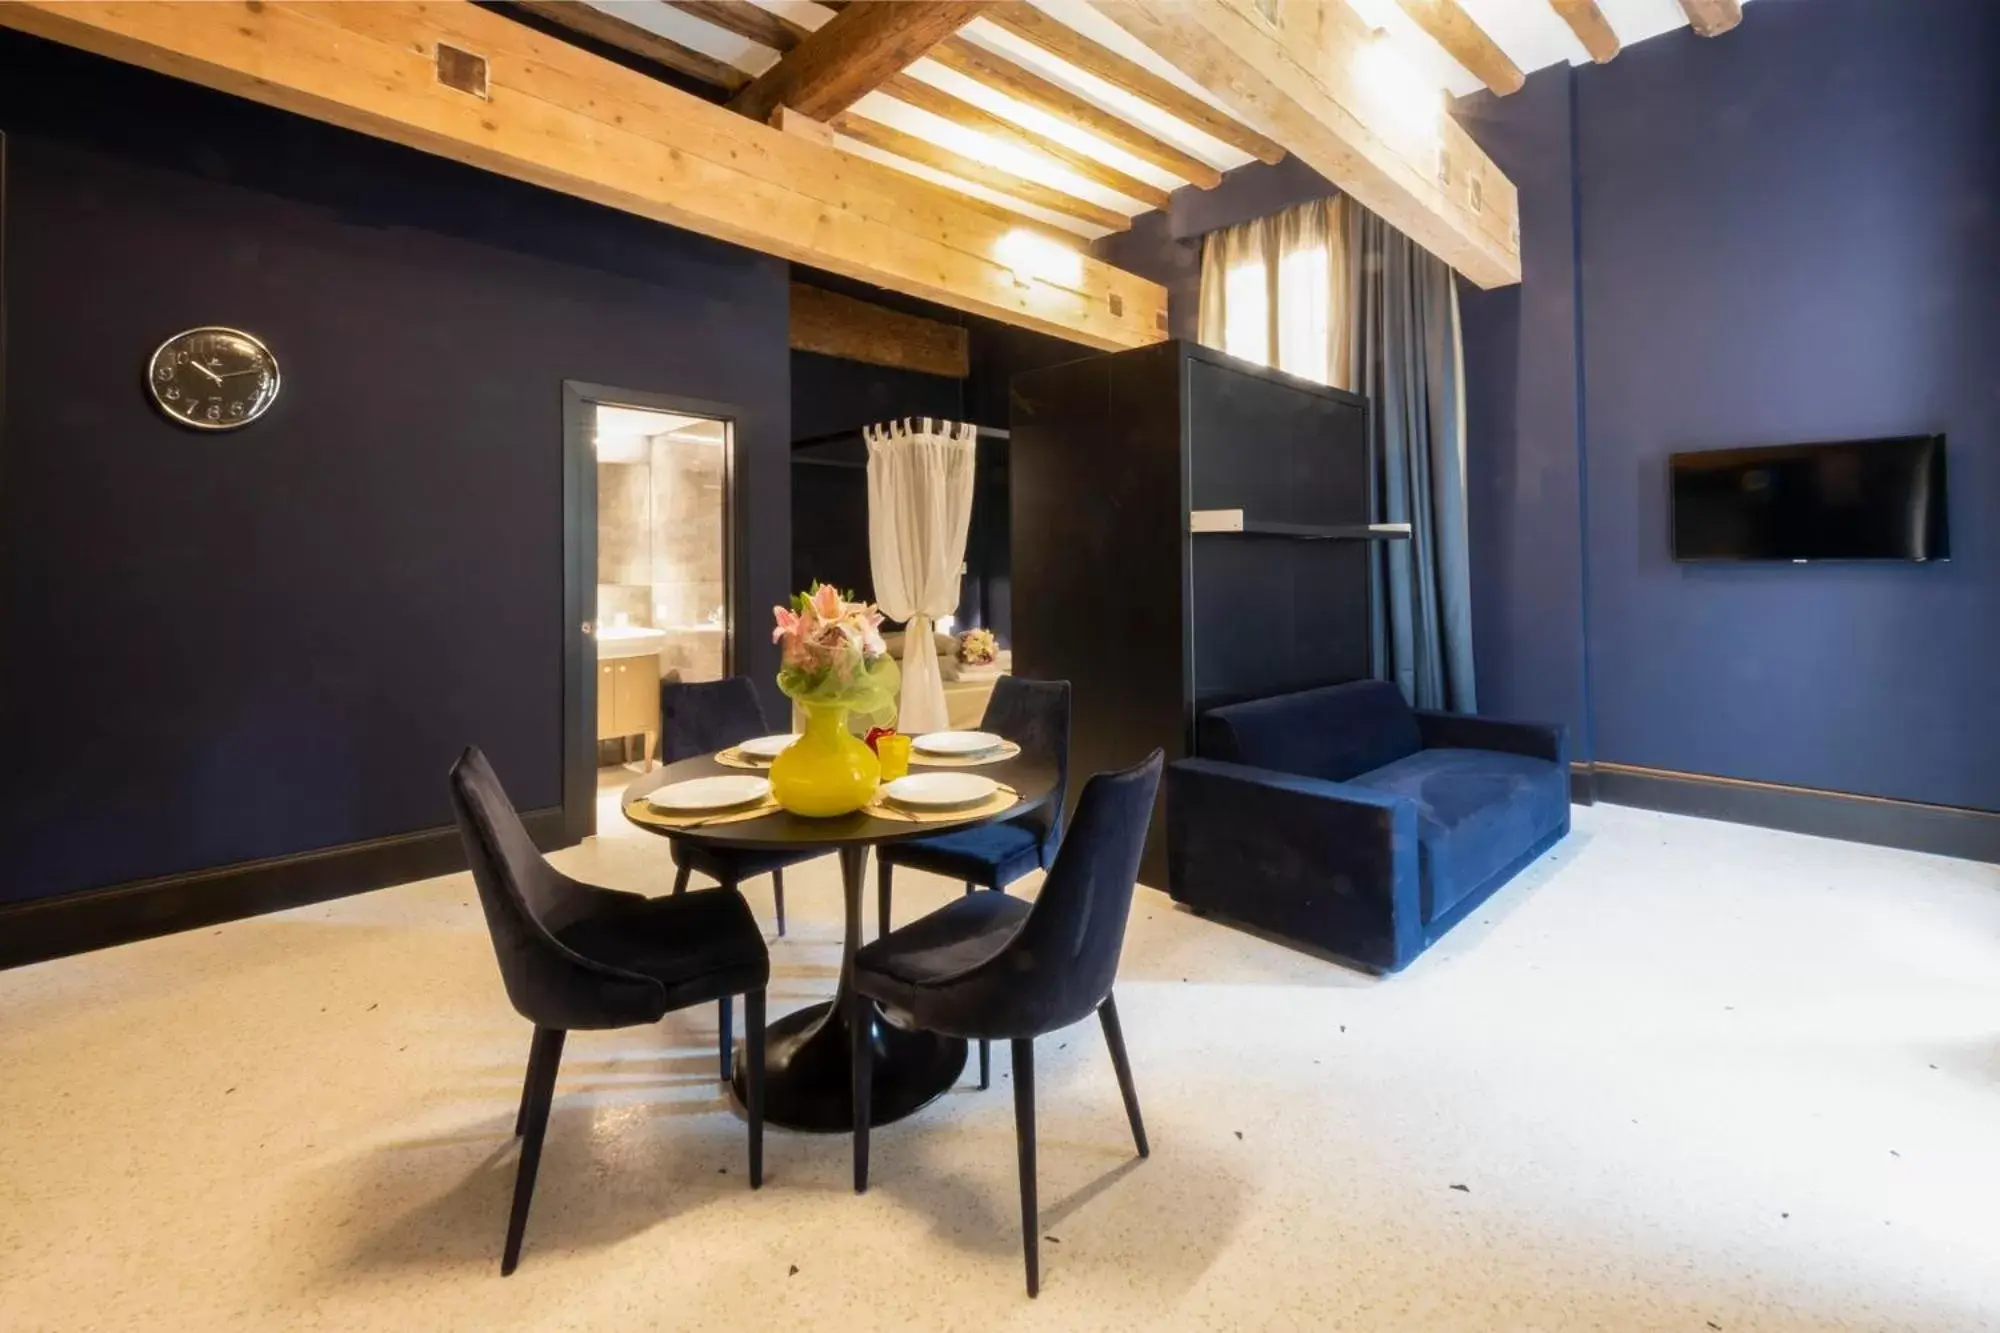 Living room, Dining Area in Residence Poli Venezia